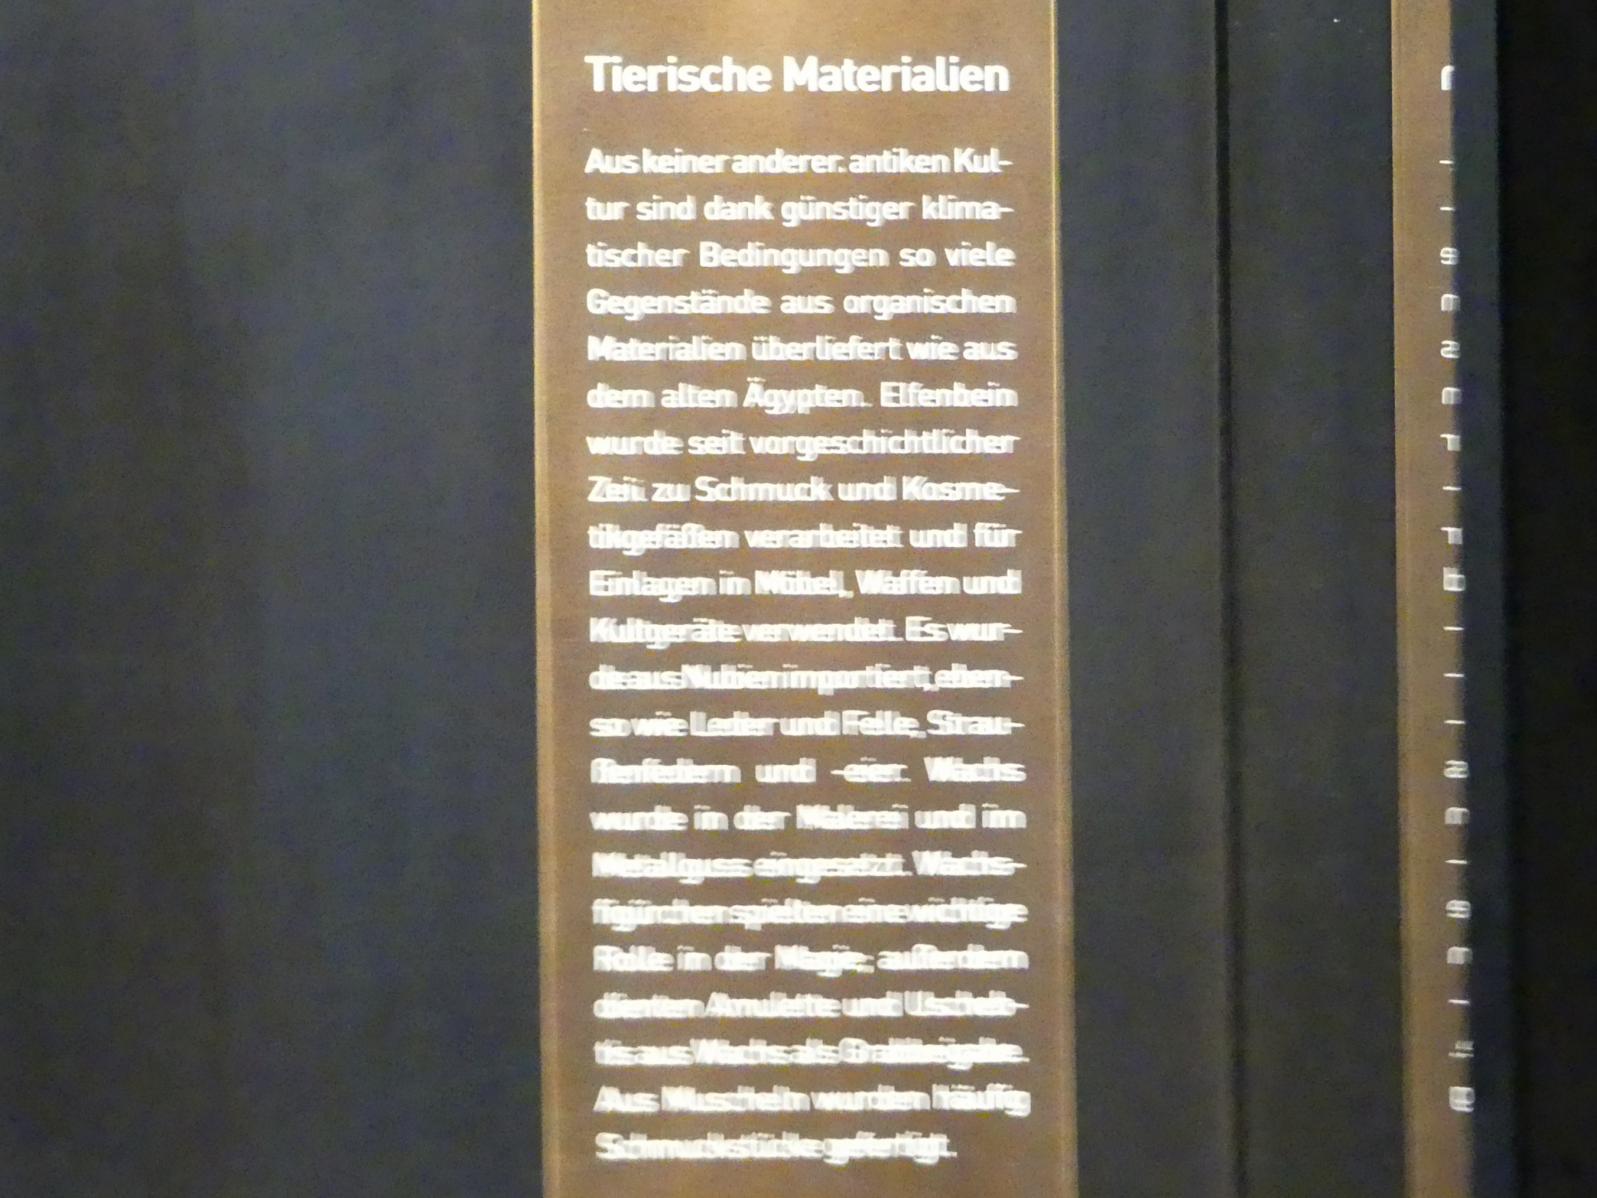 München, Staatliches Museum Ägyptischer Kunst, Saal 9, Bild 19/19